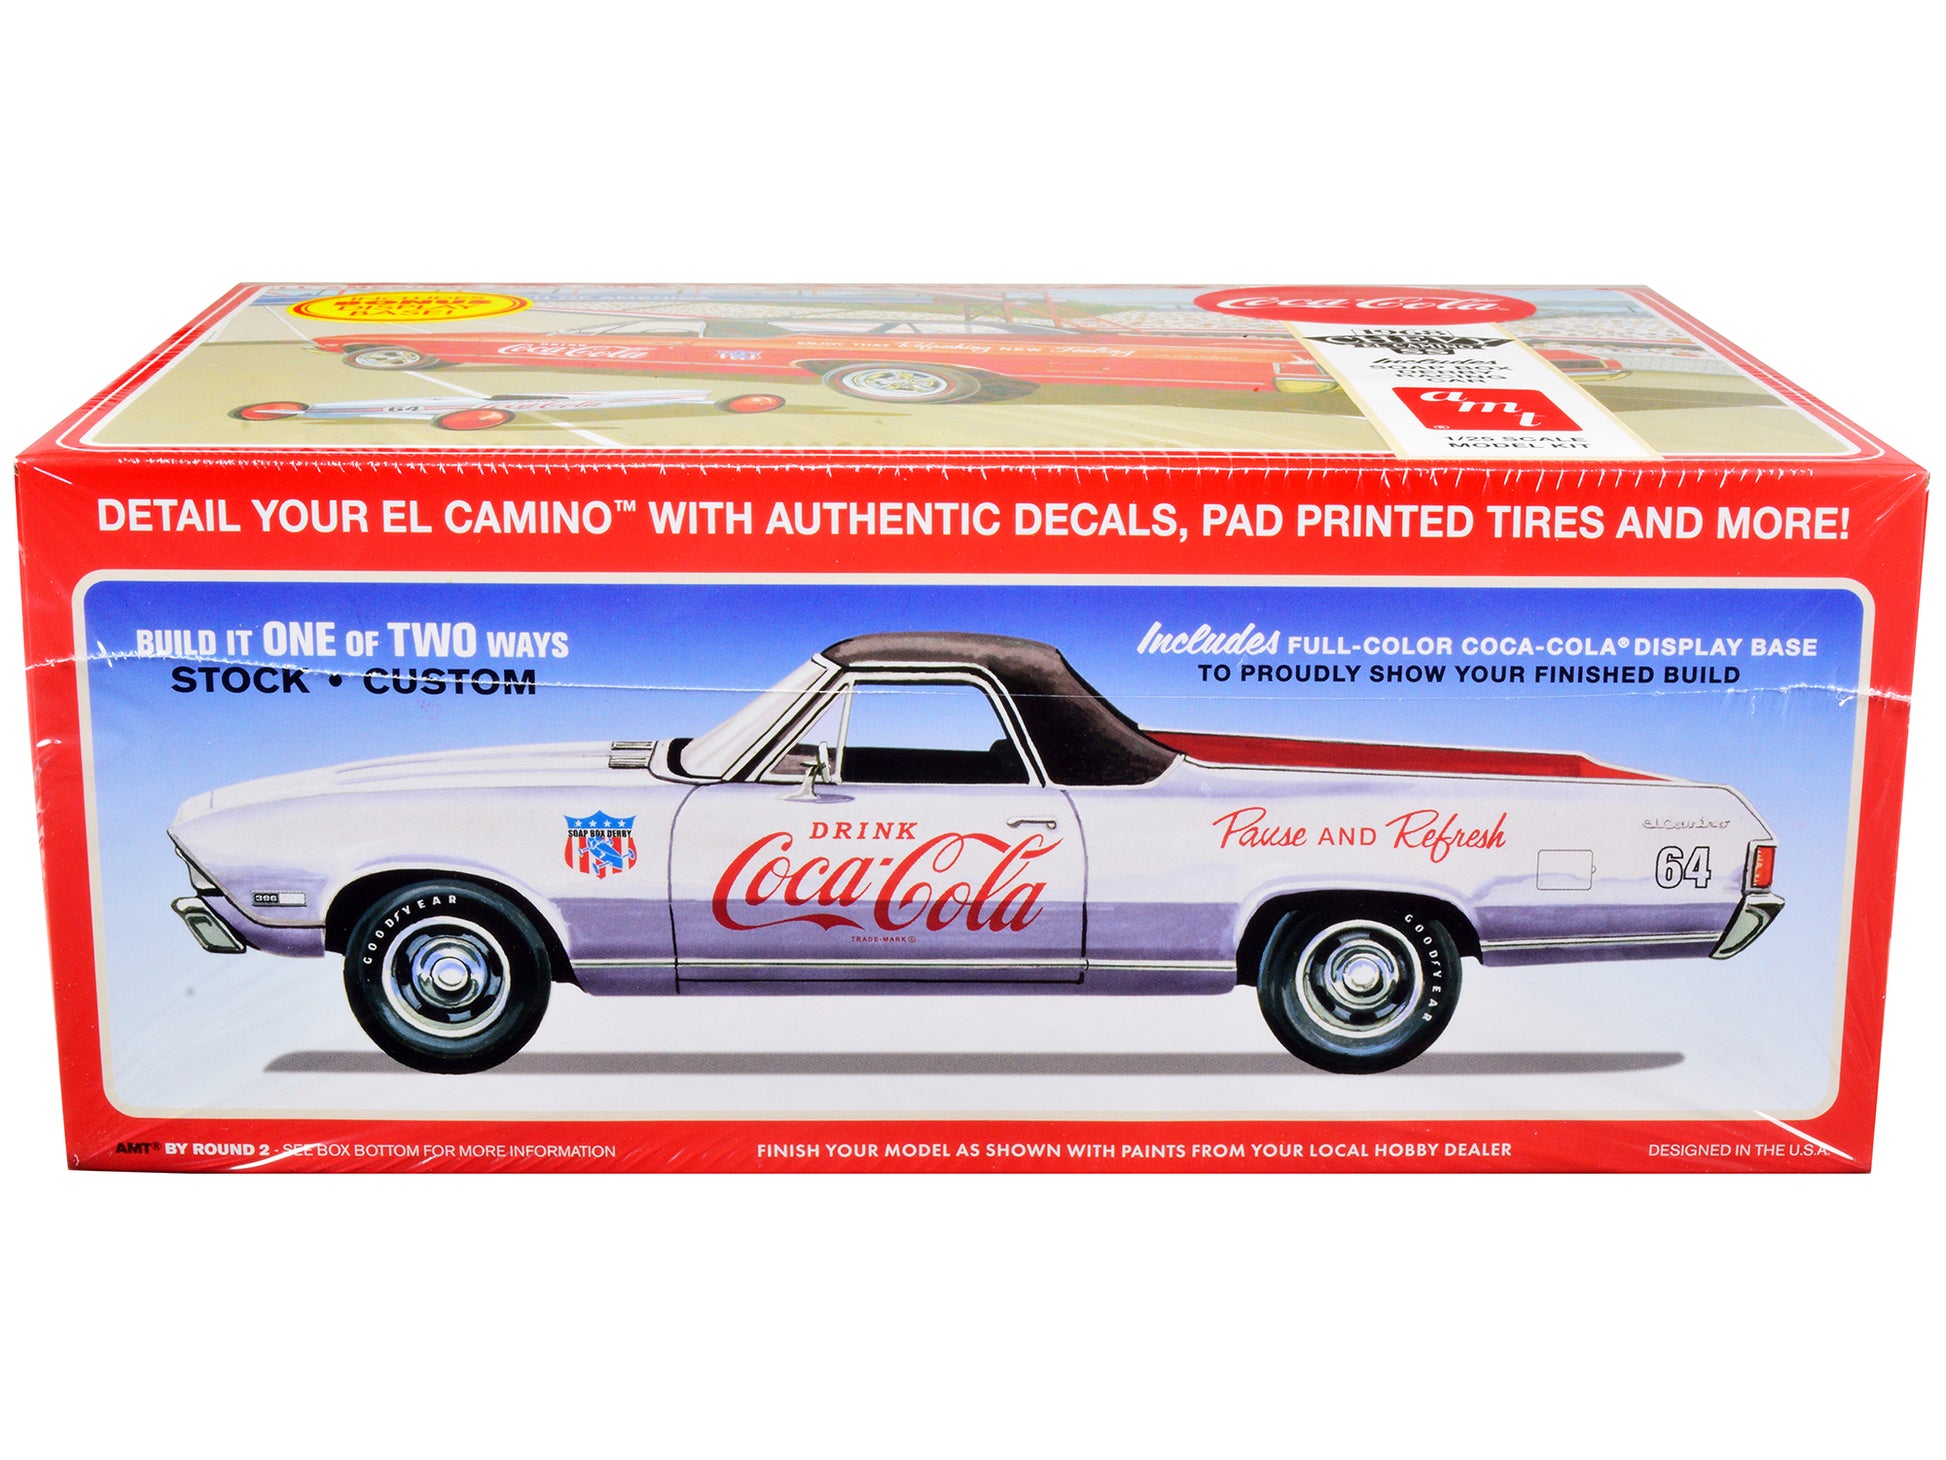  model kit 1968 chevrolet el camino soap box derby car coca-cola 1/25 